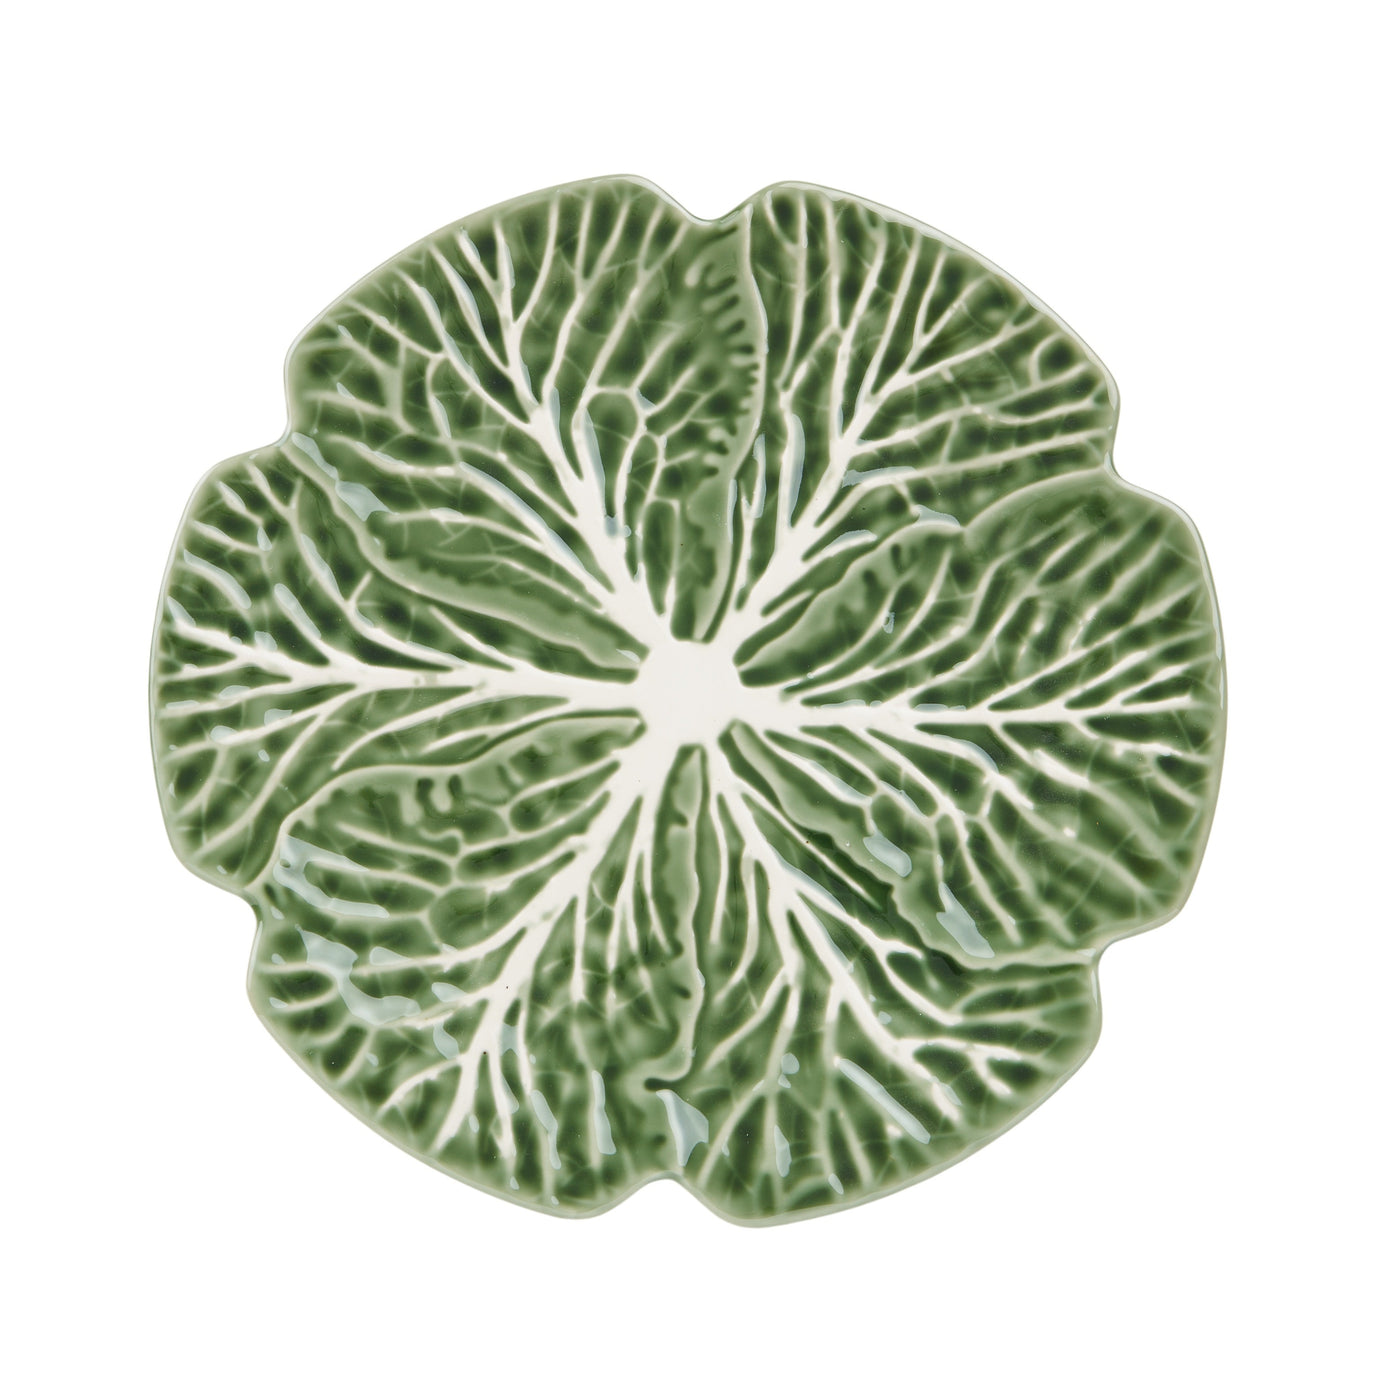 Cabbage Ceramic Plate